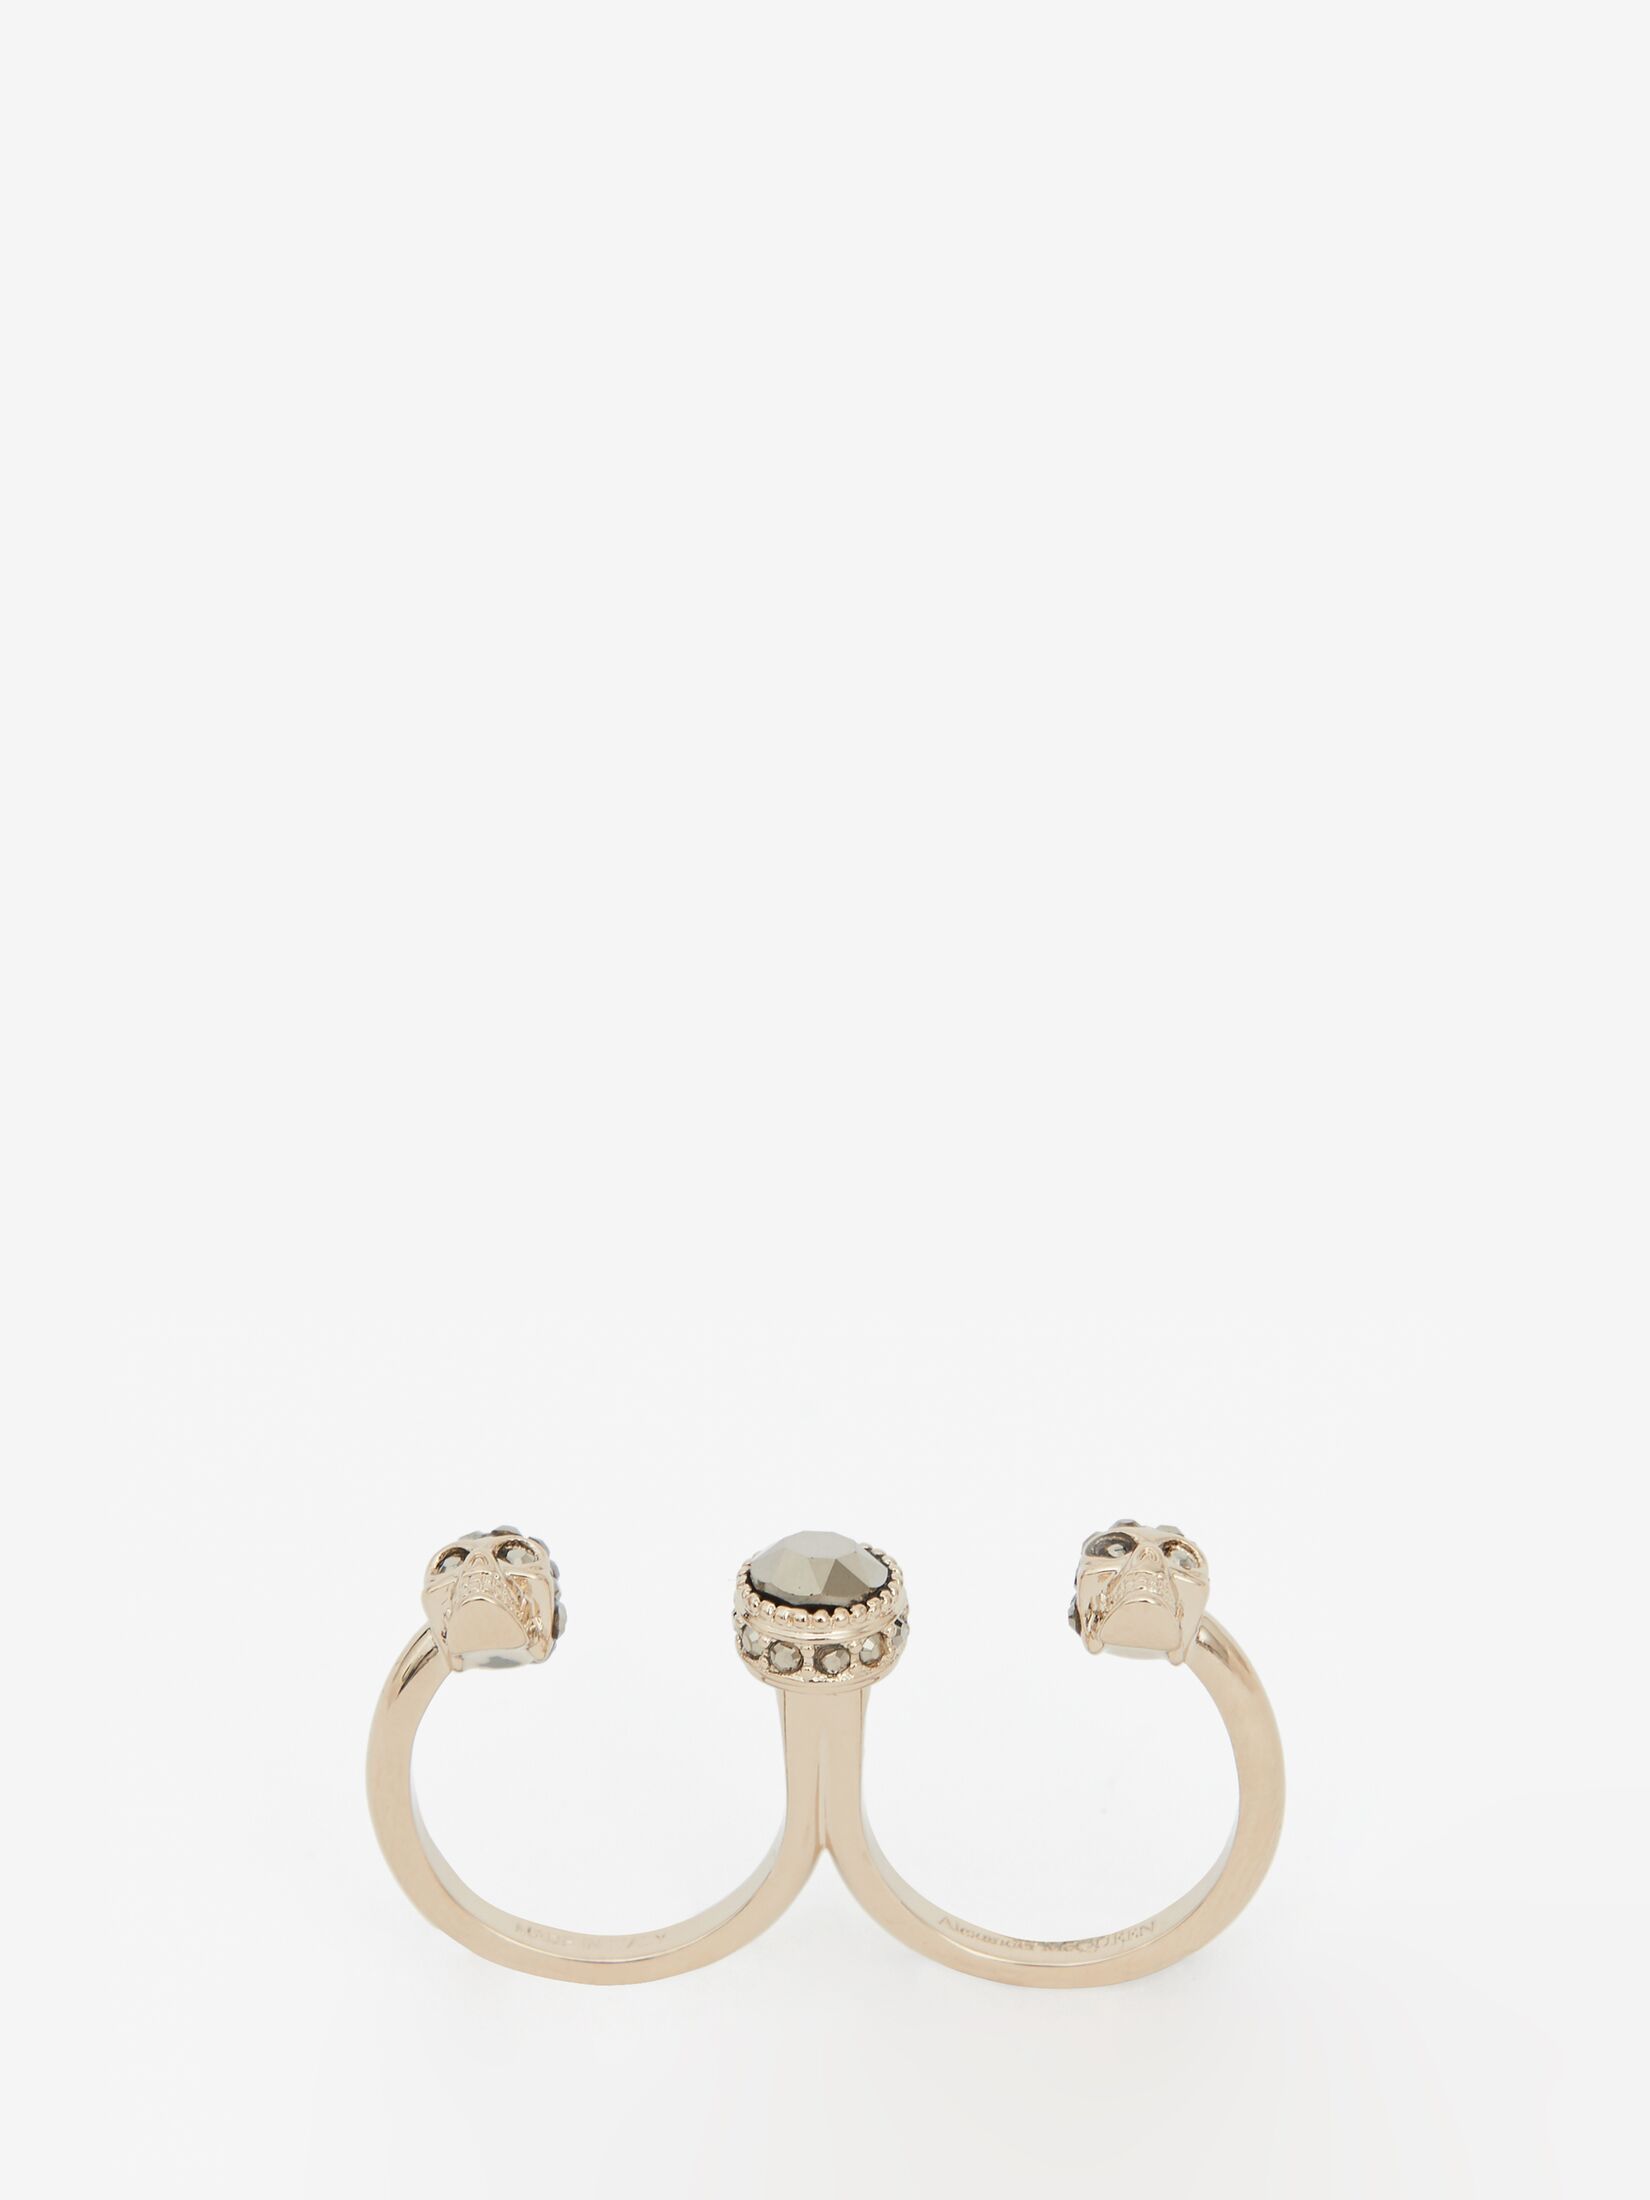 Double Skull Ring